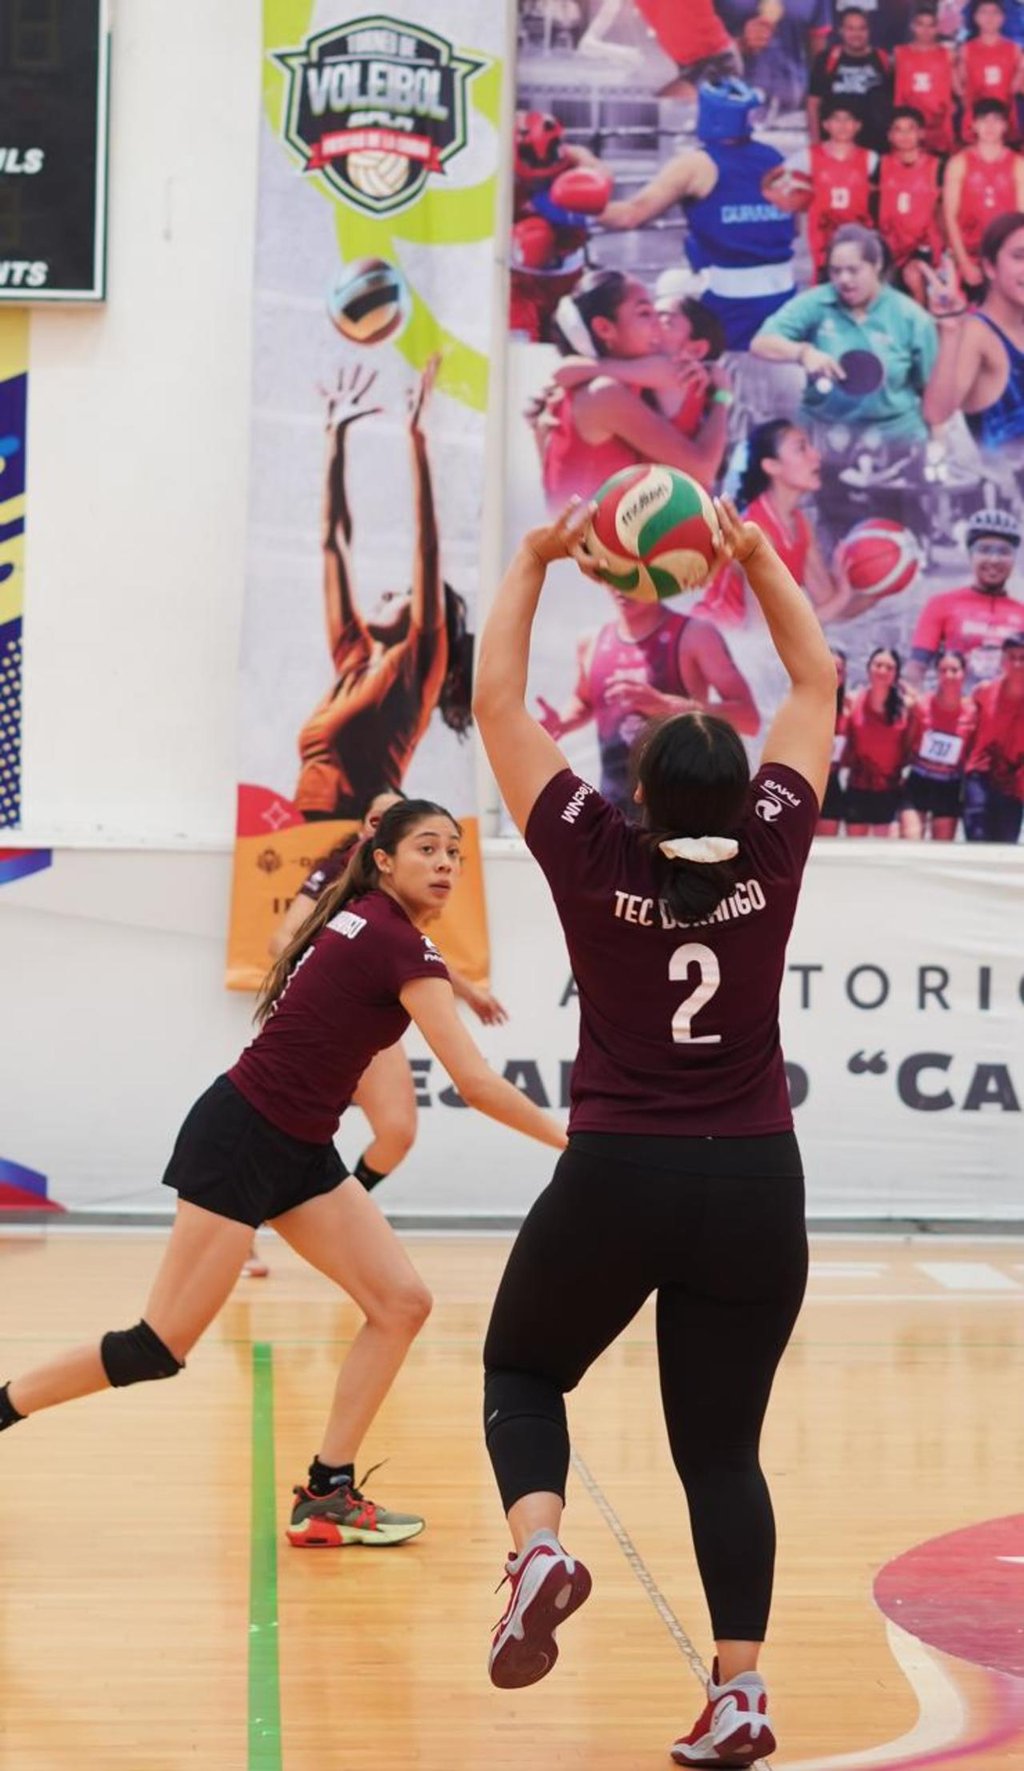 Acciones. Este día continúan las acciones del Torneo de Voleibol de la Feria Drancisco Villa 2024.